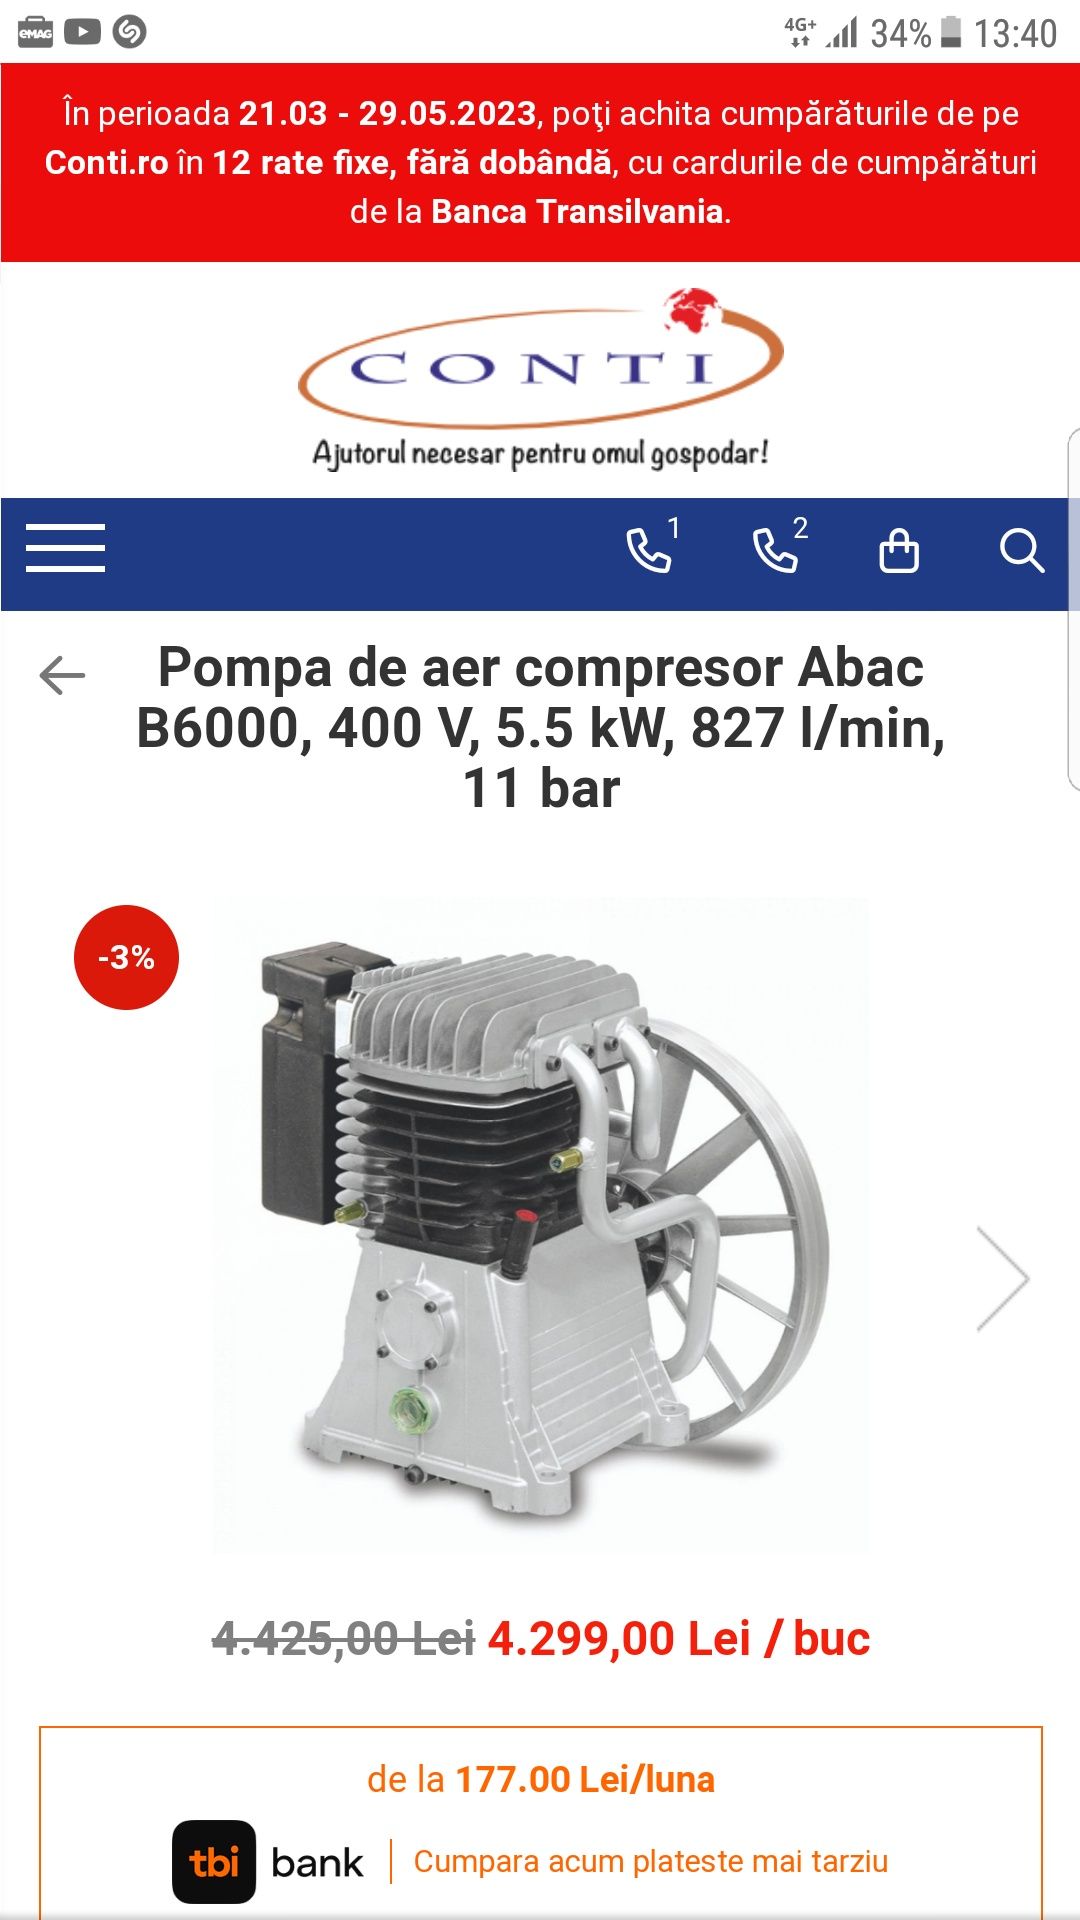 Cap compresor ABAC B6000 ( pompa de aer )